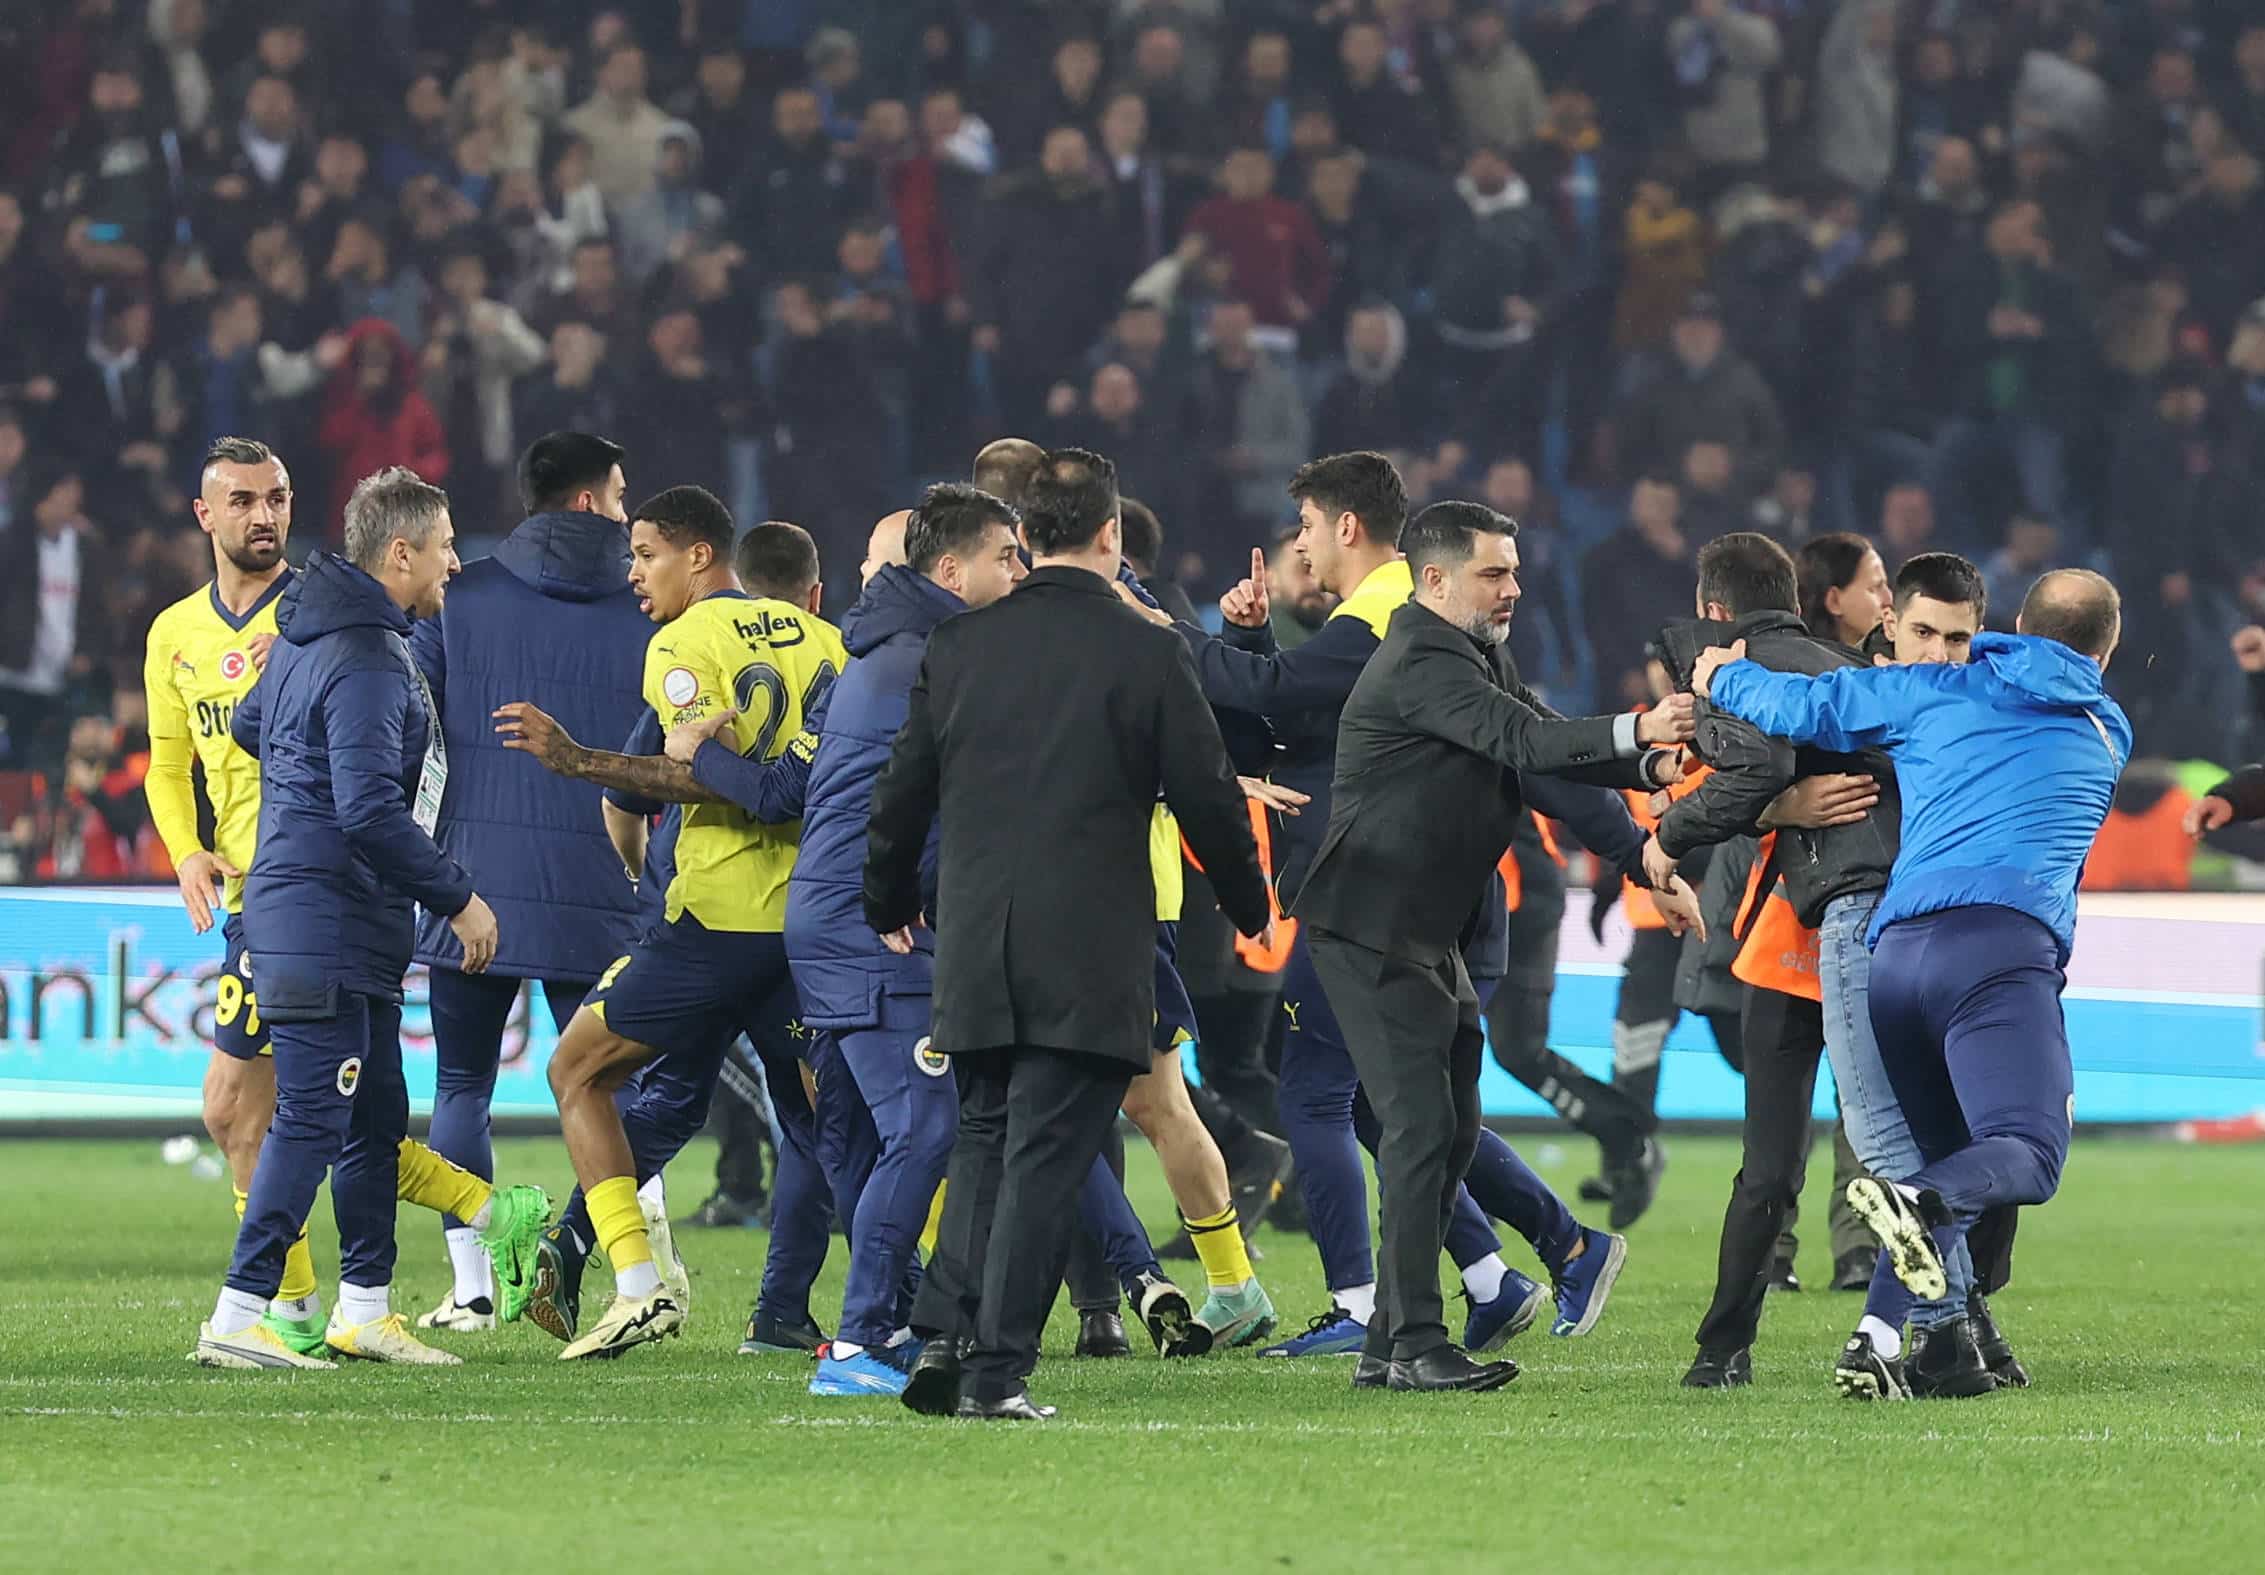 - Adeptos do Trabzonspor invadem campo e geram confusão após o jogo